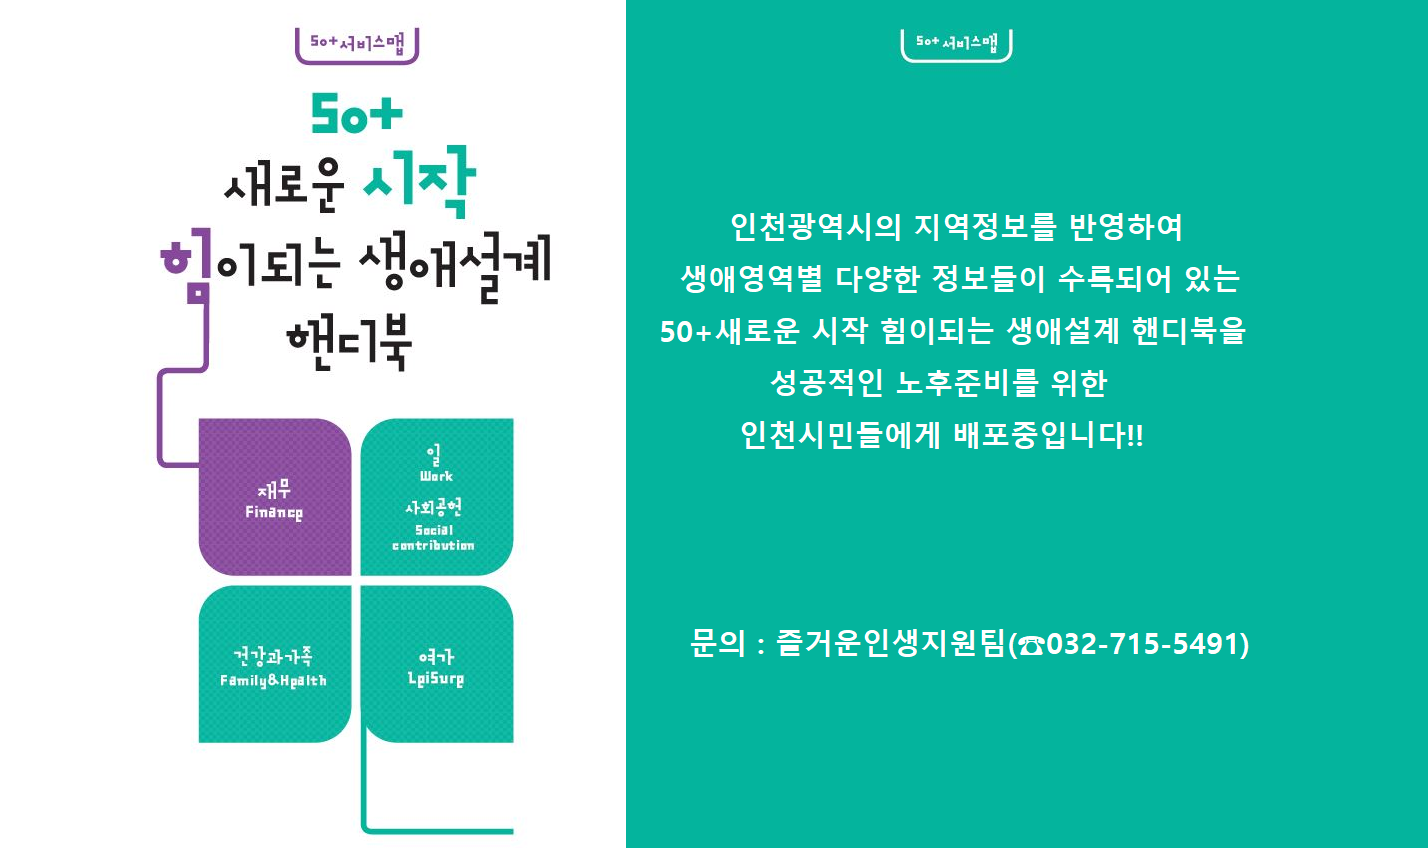 인천시민을 위한 50+새로운 시작 힘이되는 생애설계 핸디북